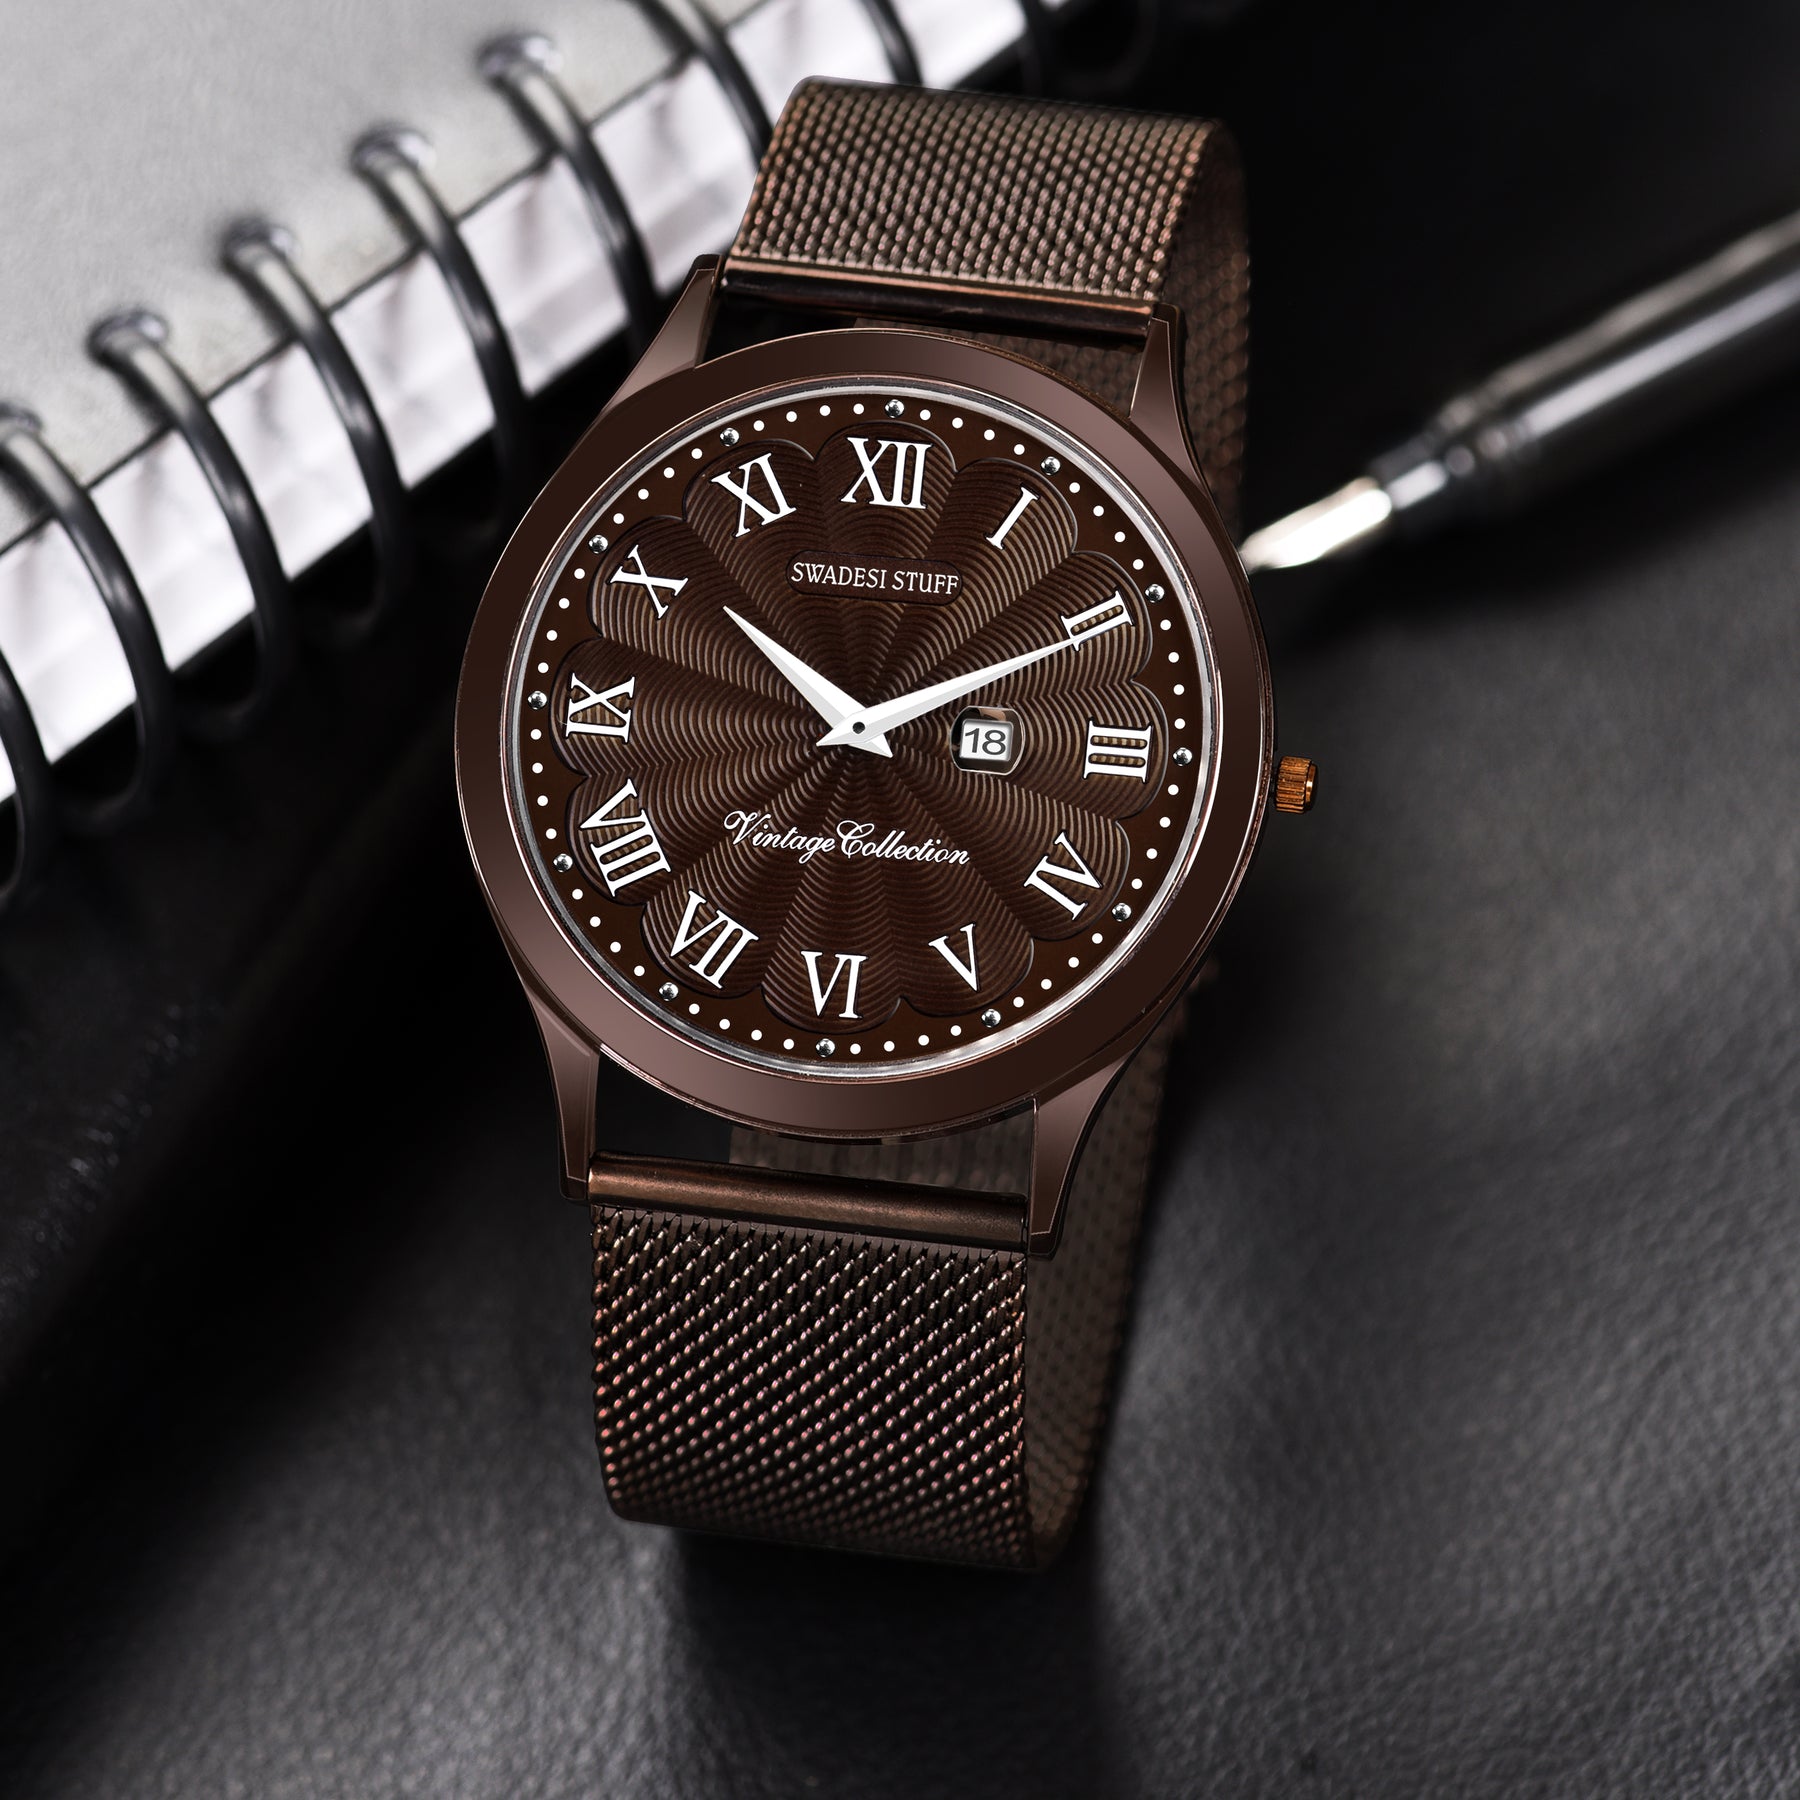 Phenomenon - Dark Brown - Premium Leather Watch For Men